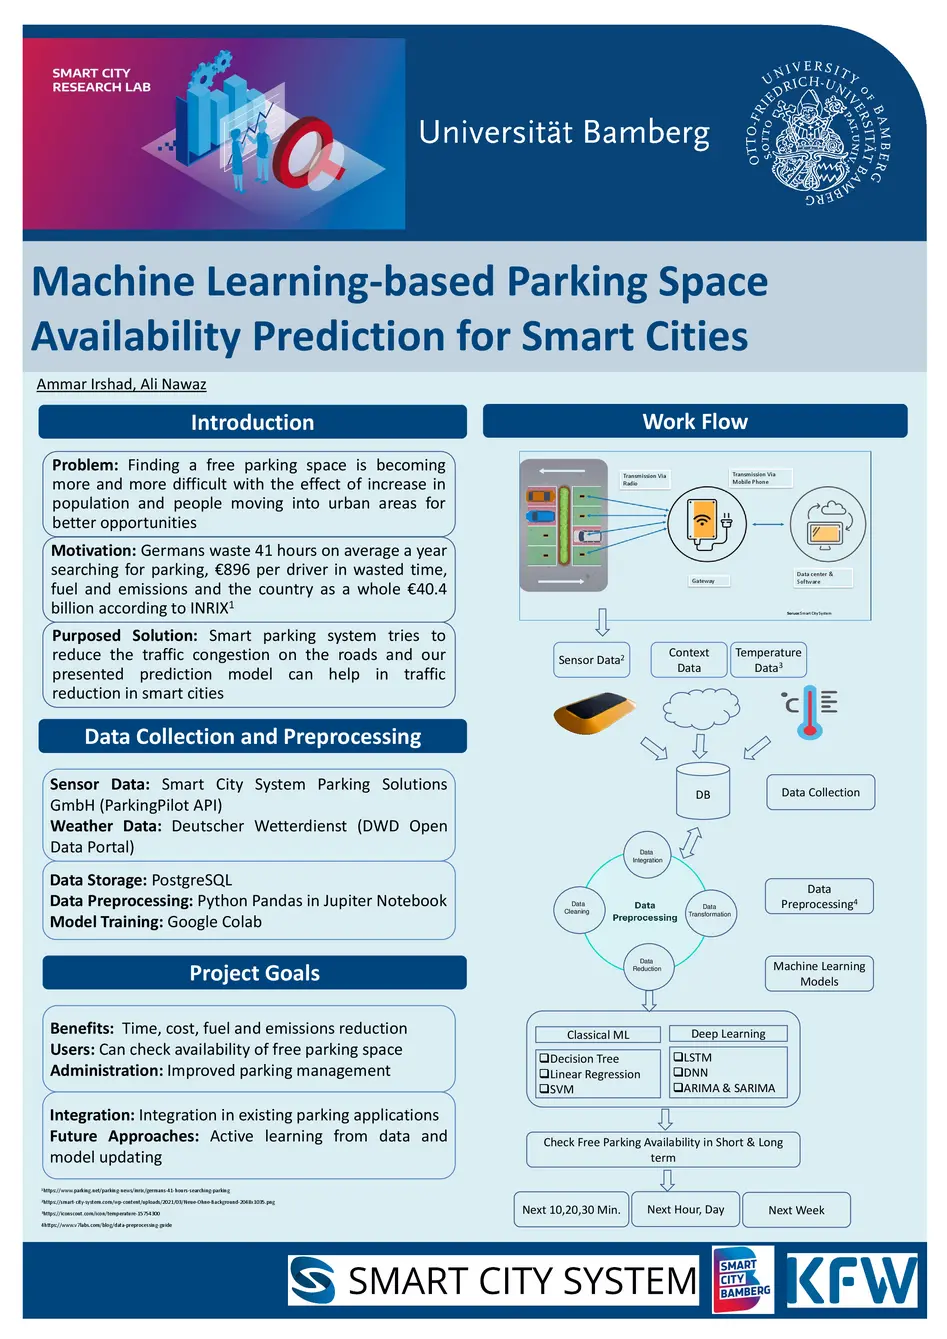 Dieses Poster stammt von einem studentischen Projekt " Machine Learning-based Parking Space Availability Prediction for Smart Cities" im Parking in Smart Cities Kontext. Das Poster gibt eine Einführung in das Thema, stellt die Datensammlung und Verarbeitung, den "Workflow", sowie die Projekt Ziele vor.